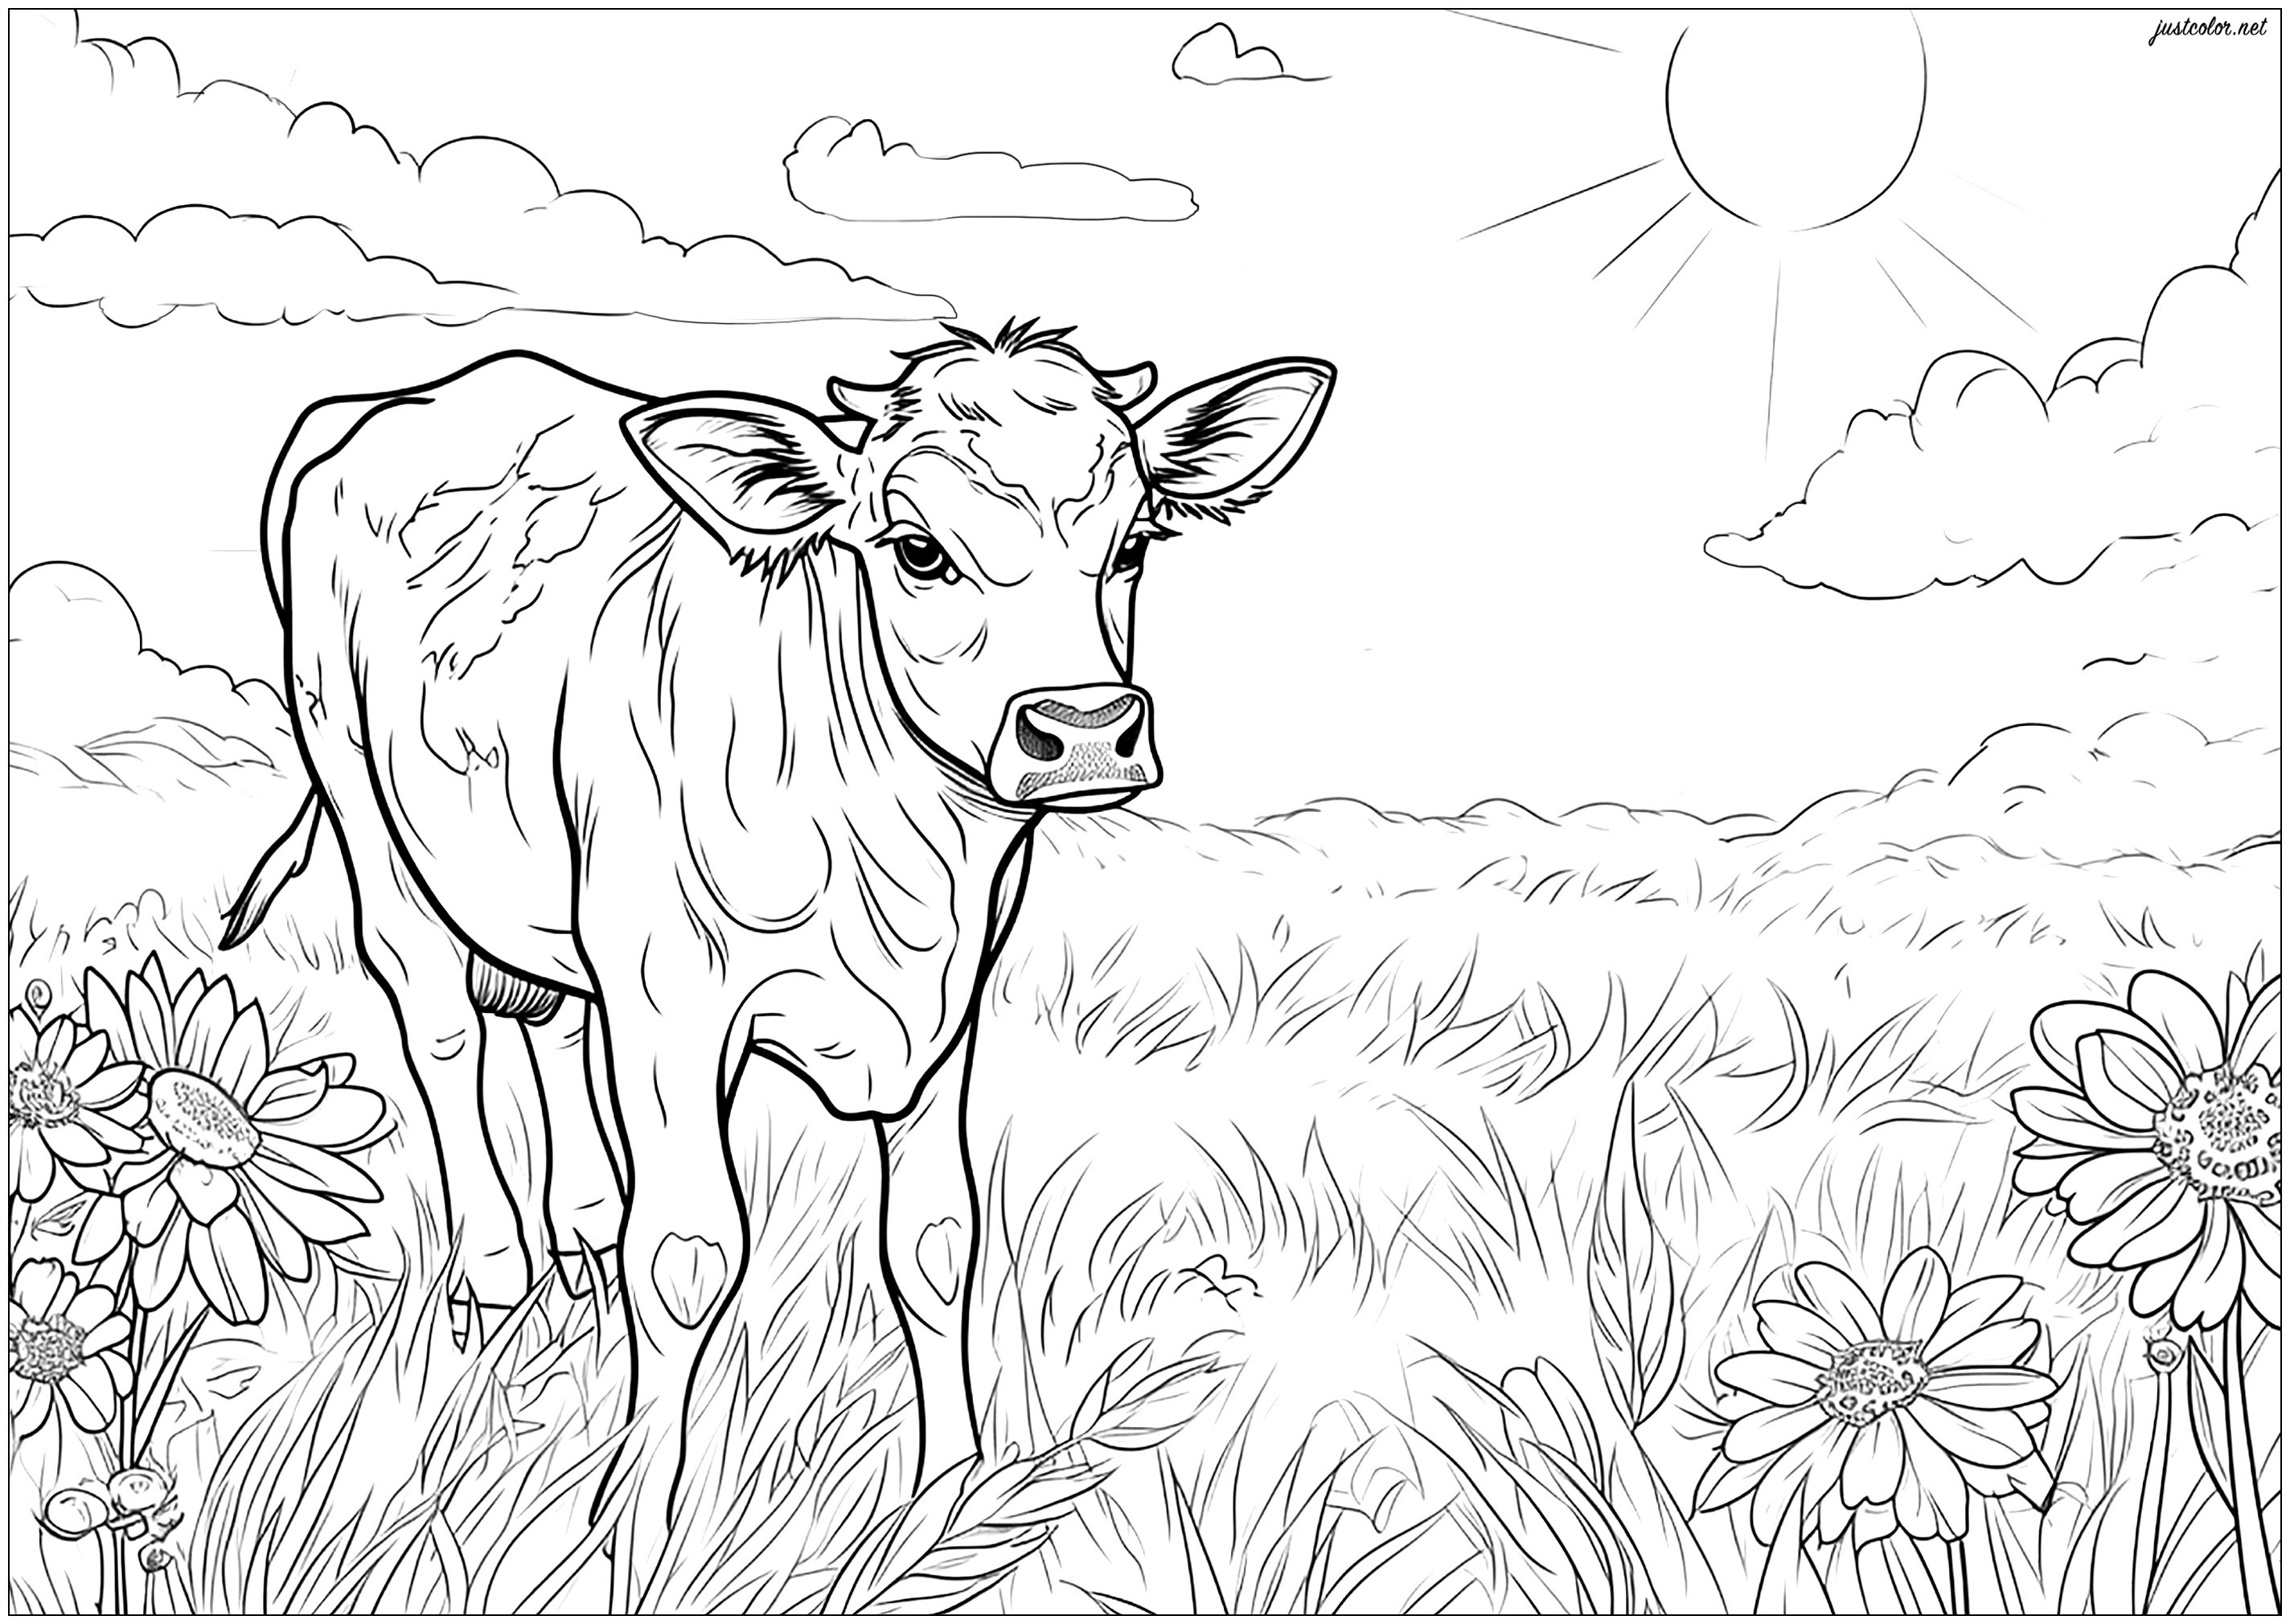 Cow in a field - 1